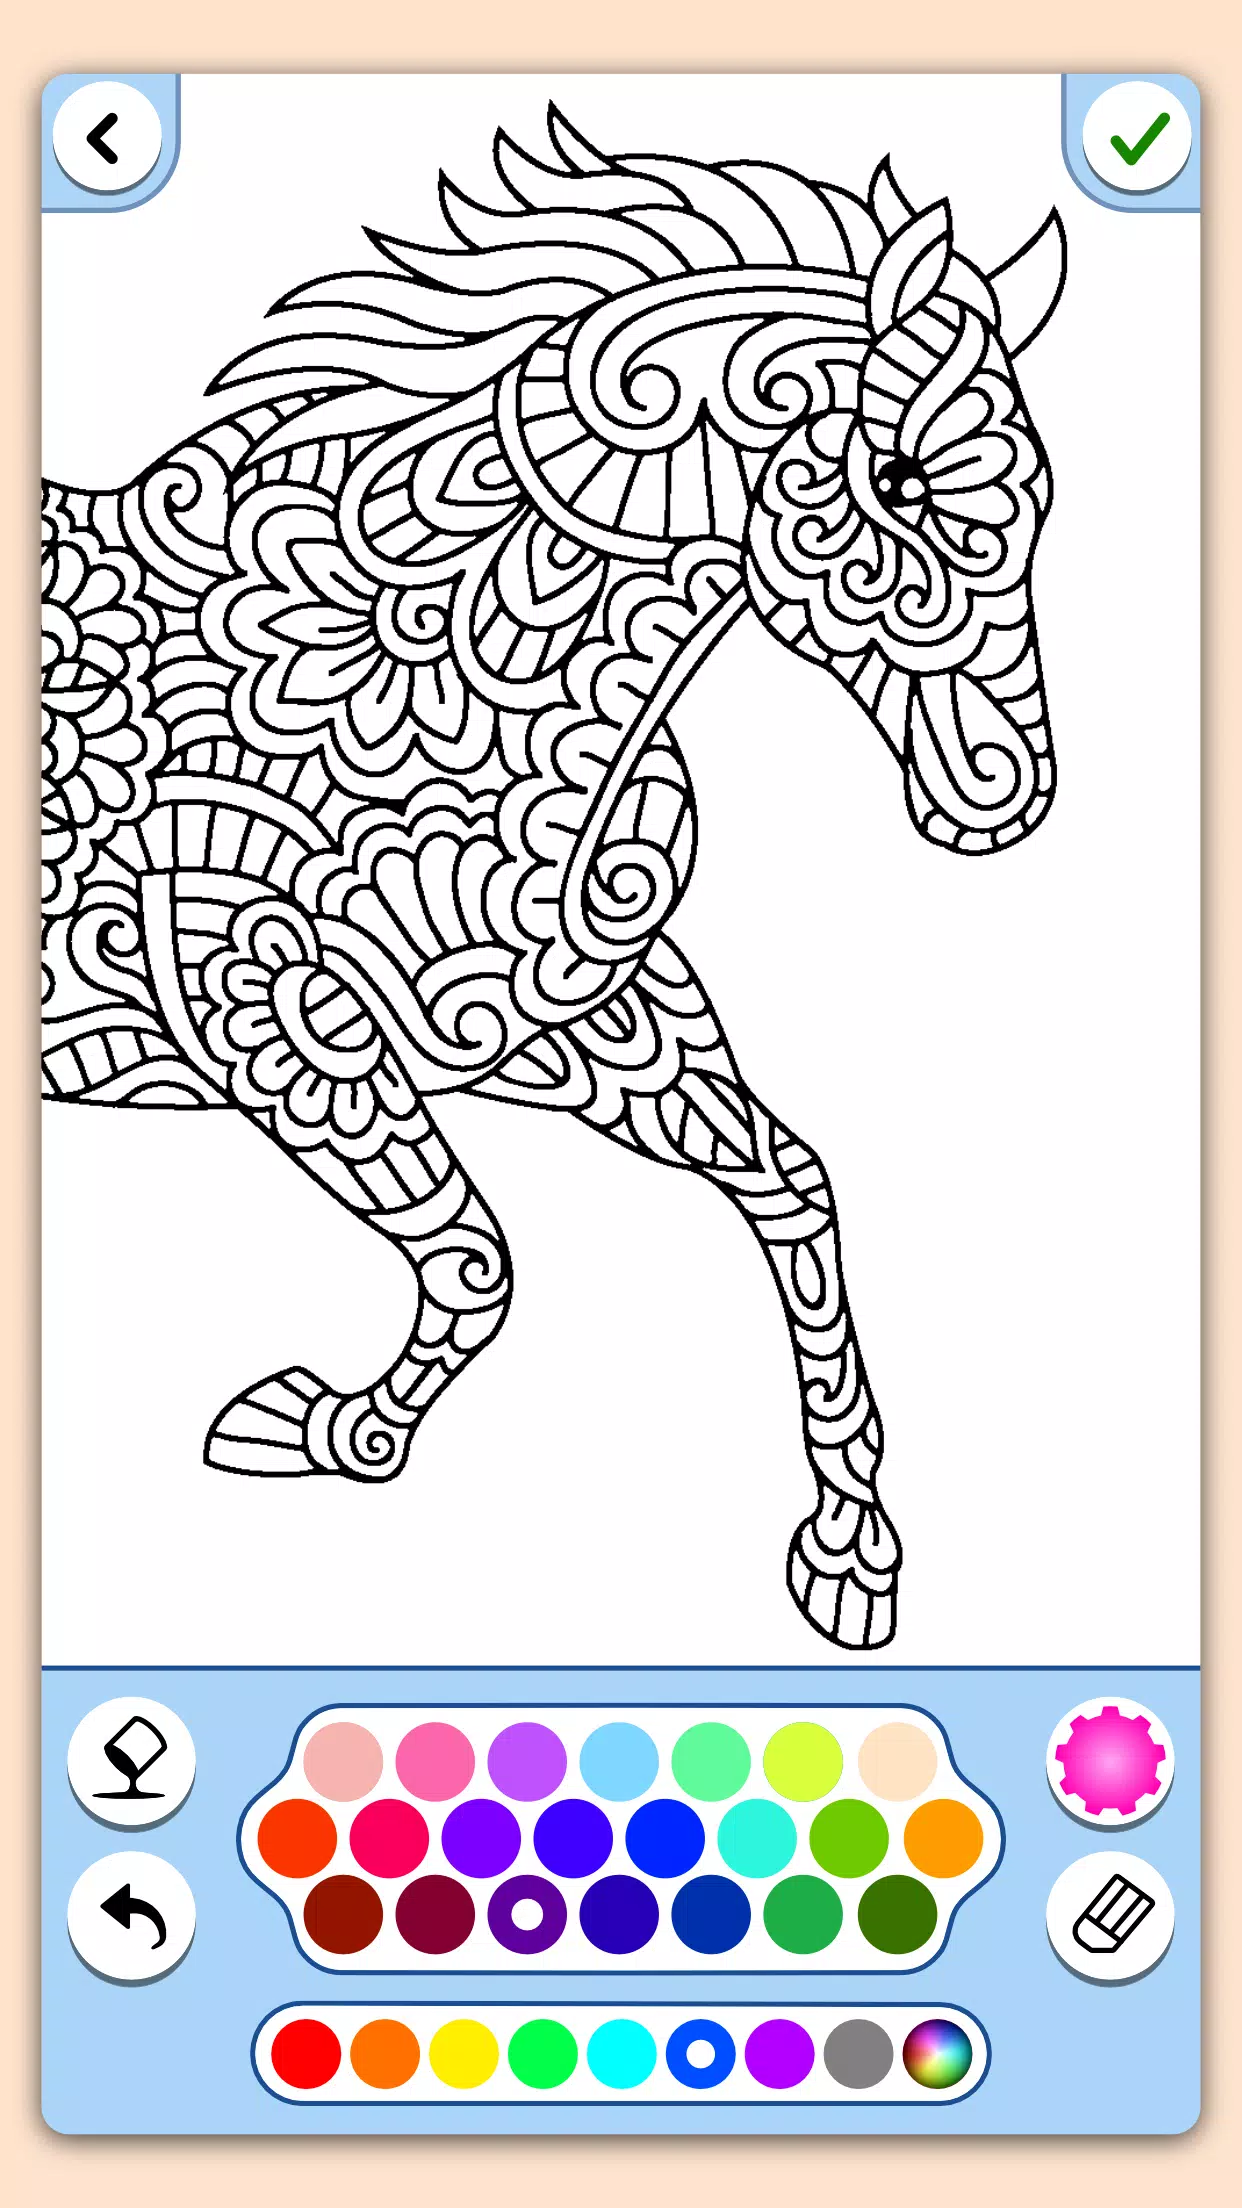 Download do APK de livro para colorir cavalo para Android